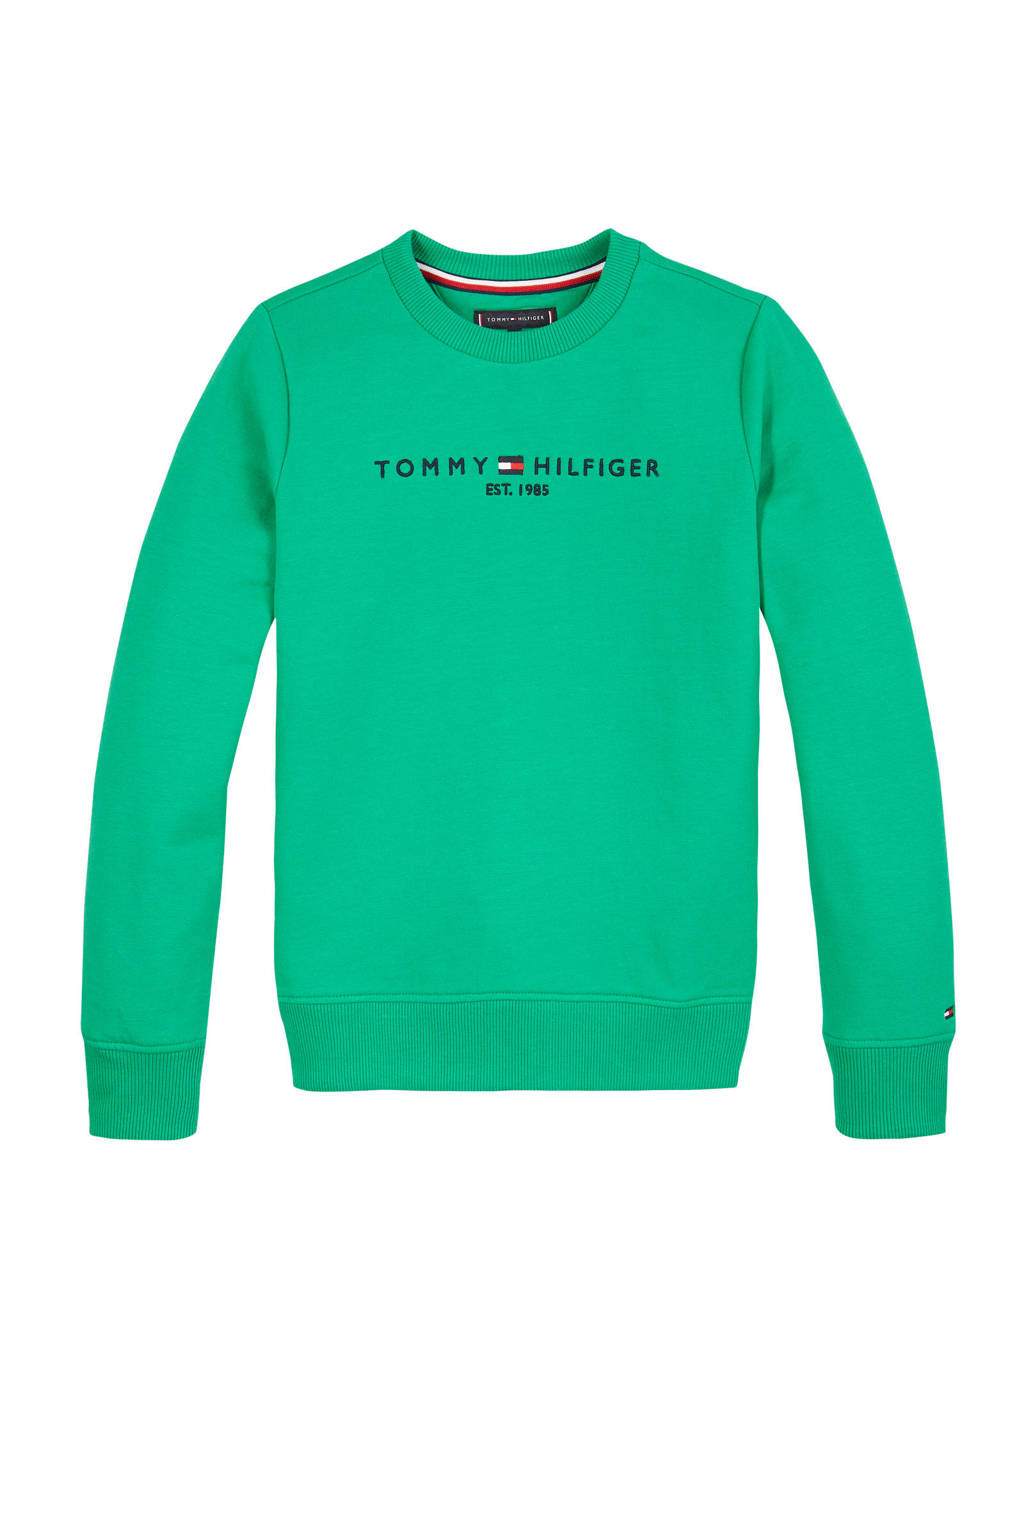 Korting Geaccepteerd goochelaar Tommy Hilfiger sweater met logo groen | wehkamp